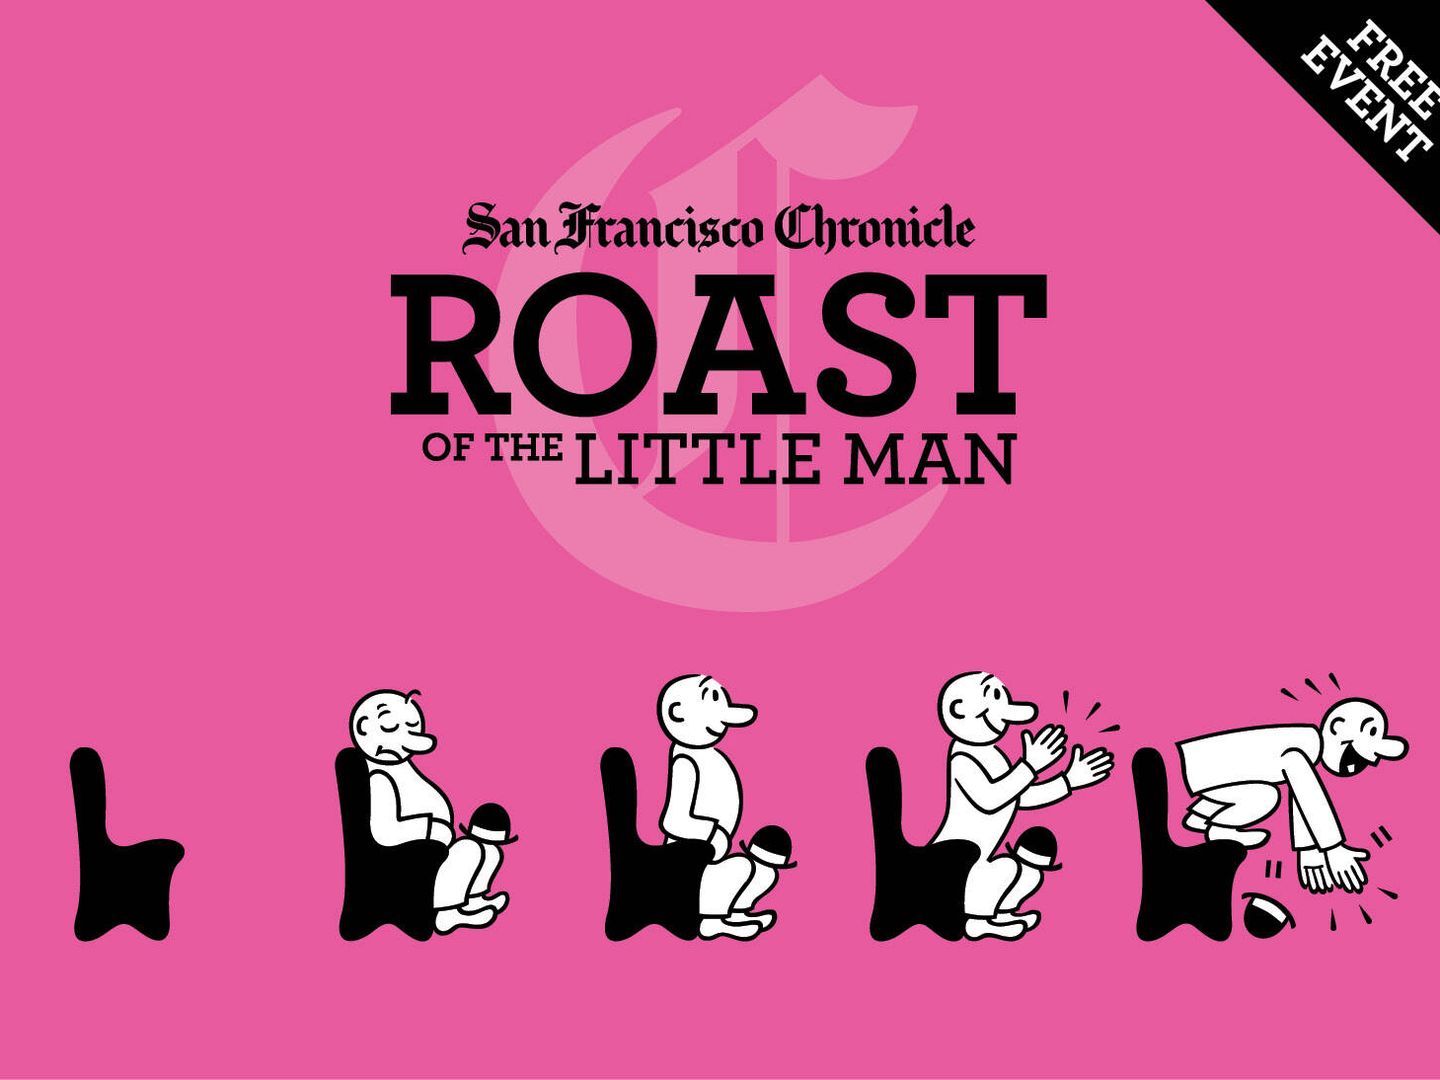 El 'Little man' de San Francisco Chronicle'